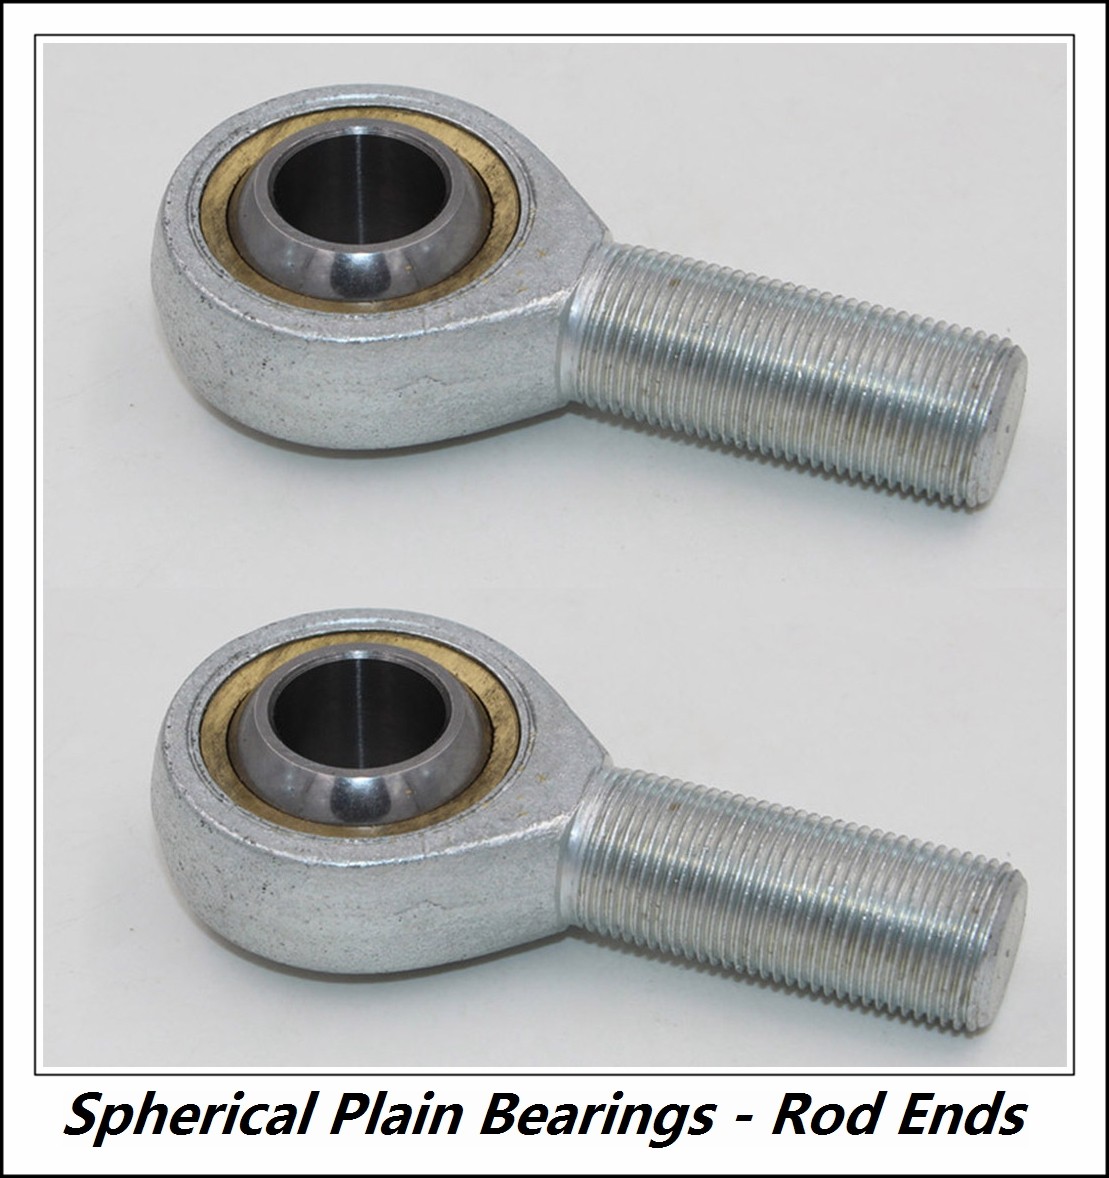 PT INTERNATIONAL EAL12D  Spherical Plain Bearings - Rod Ends